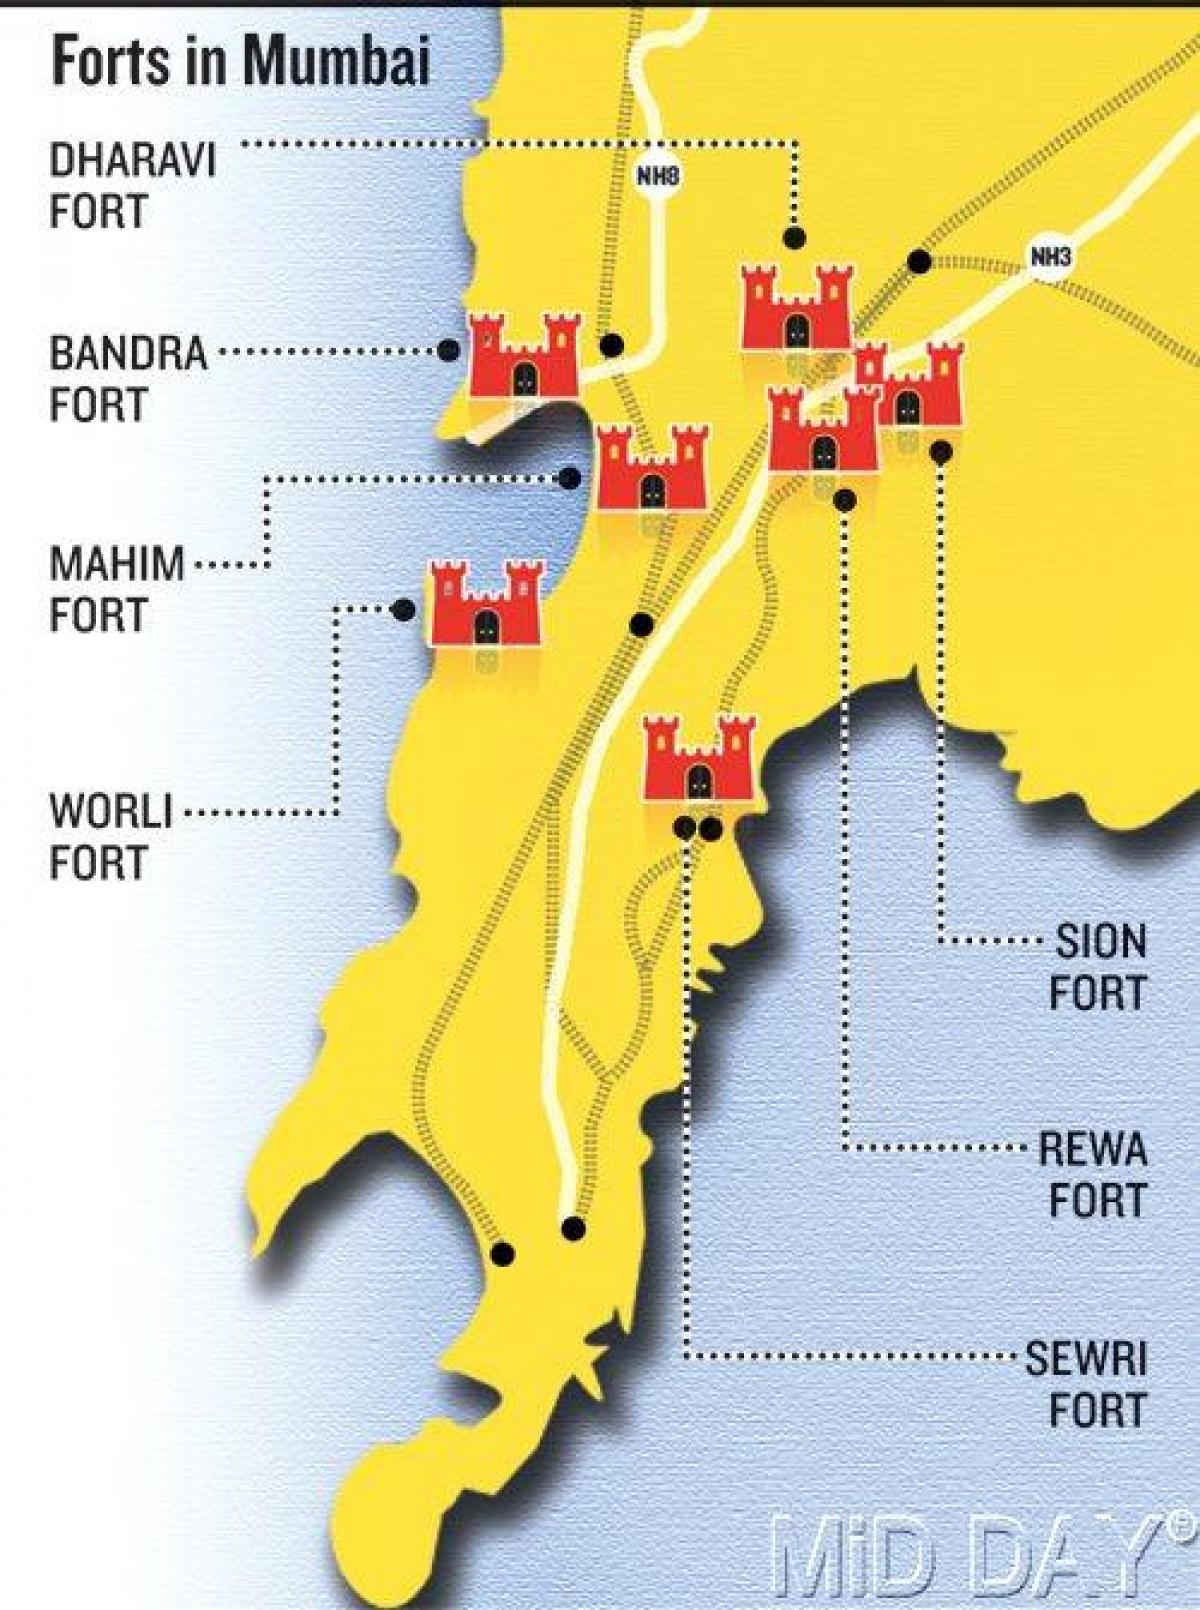 Mumbai fort zonë të hartës